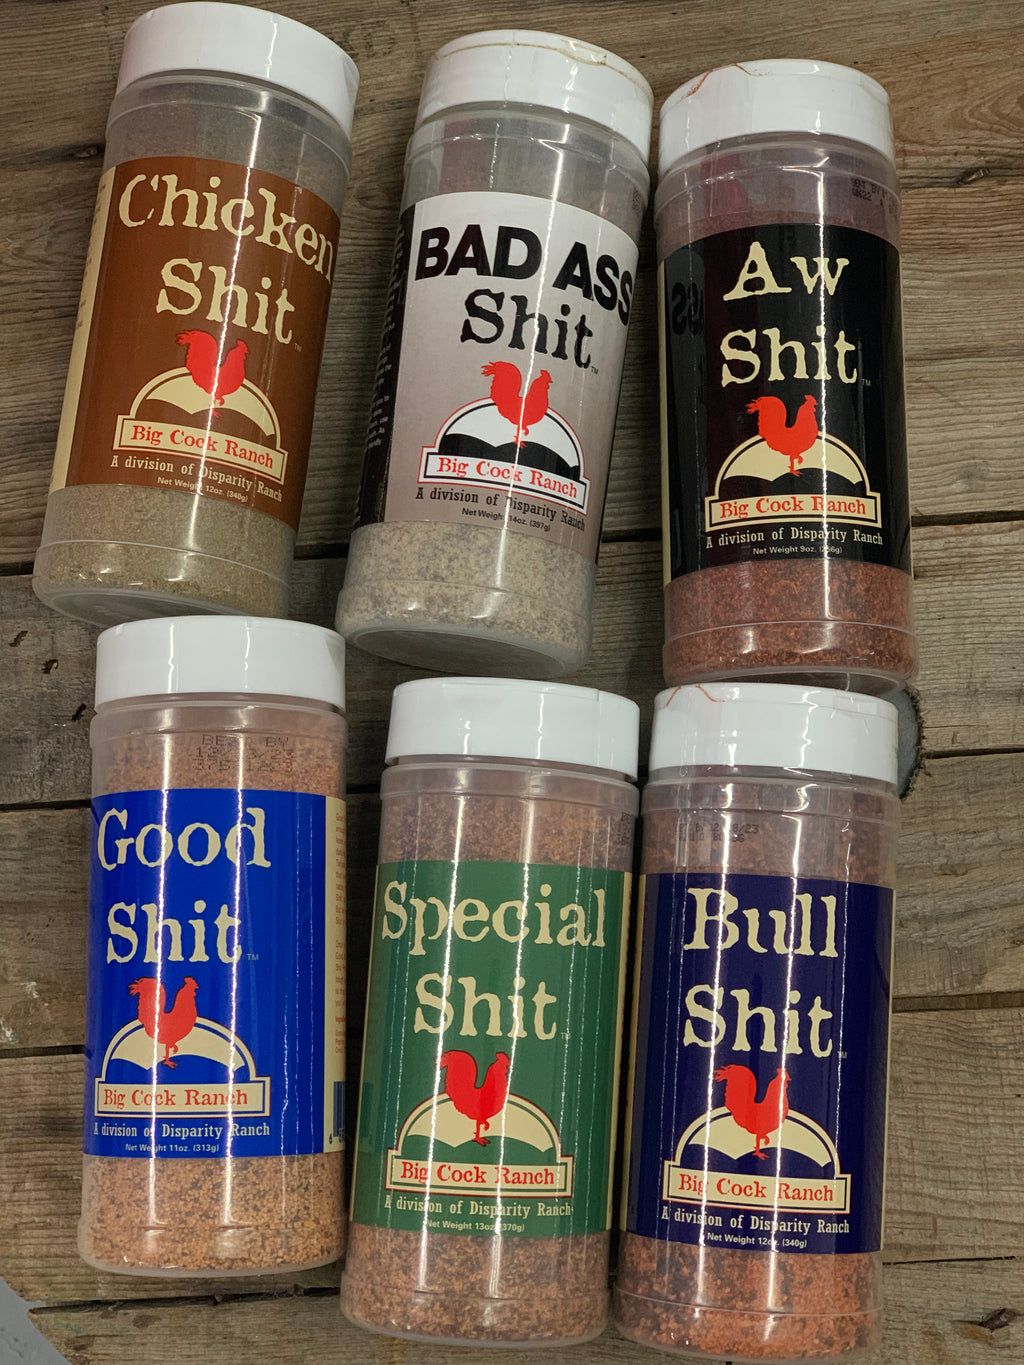 Aw Shit - Hot n' Spicy Seasoning